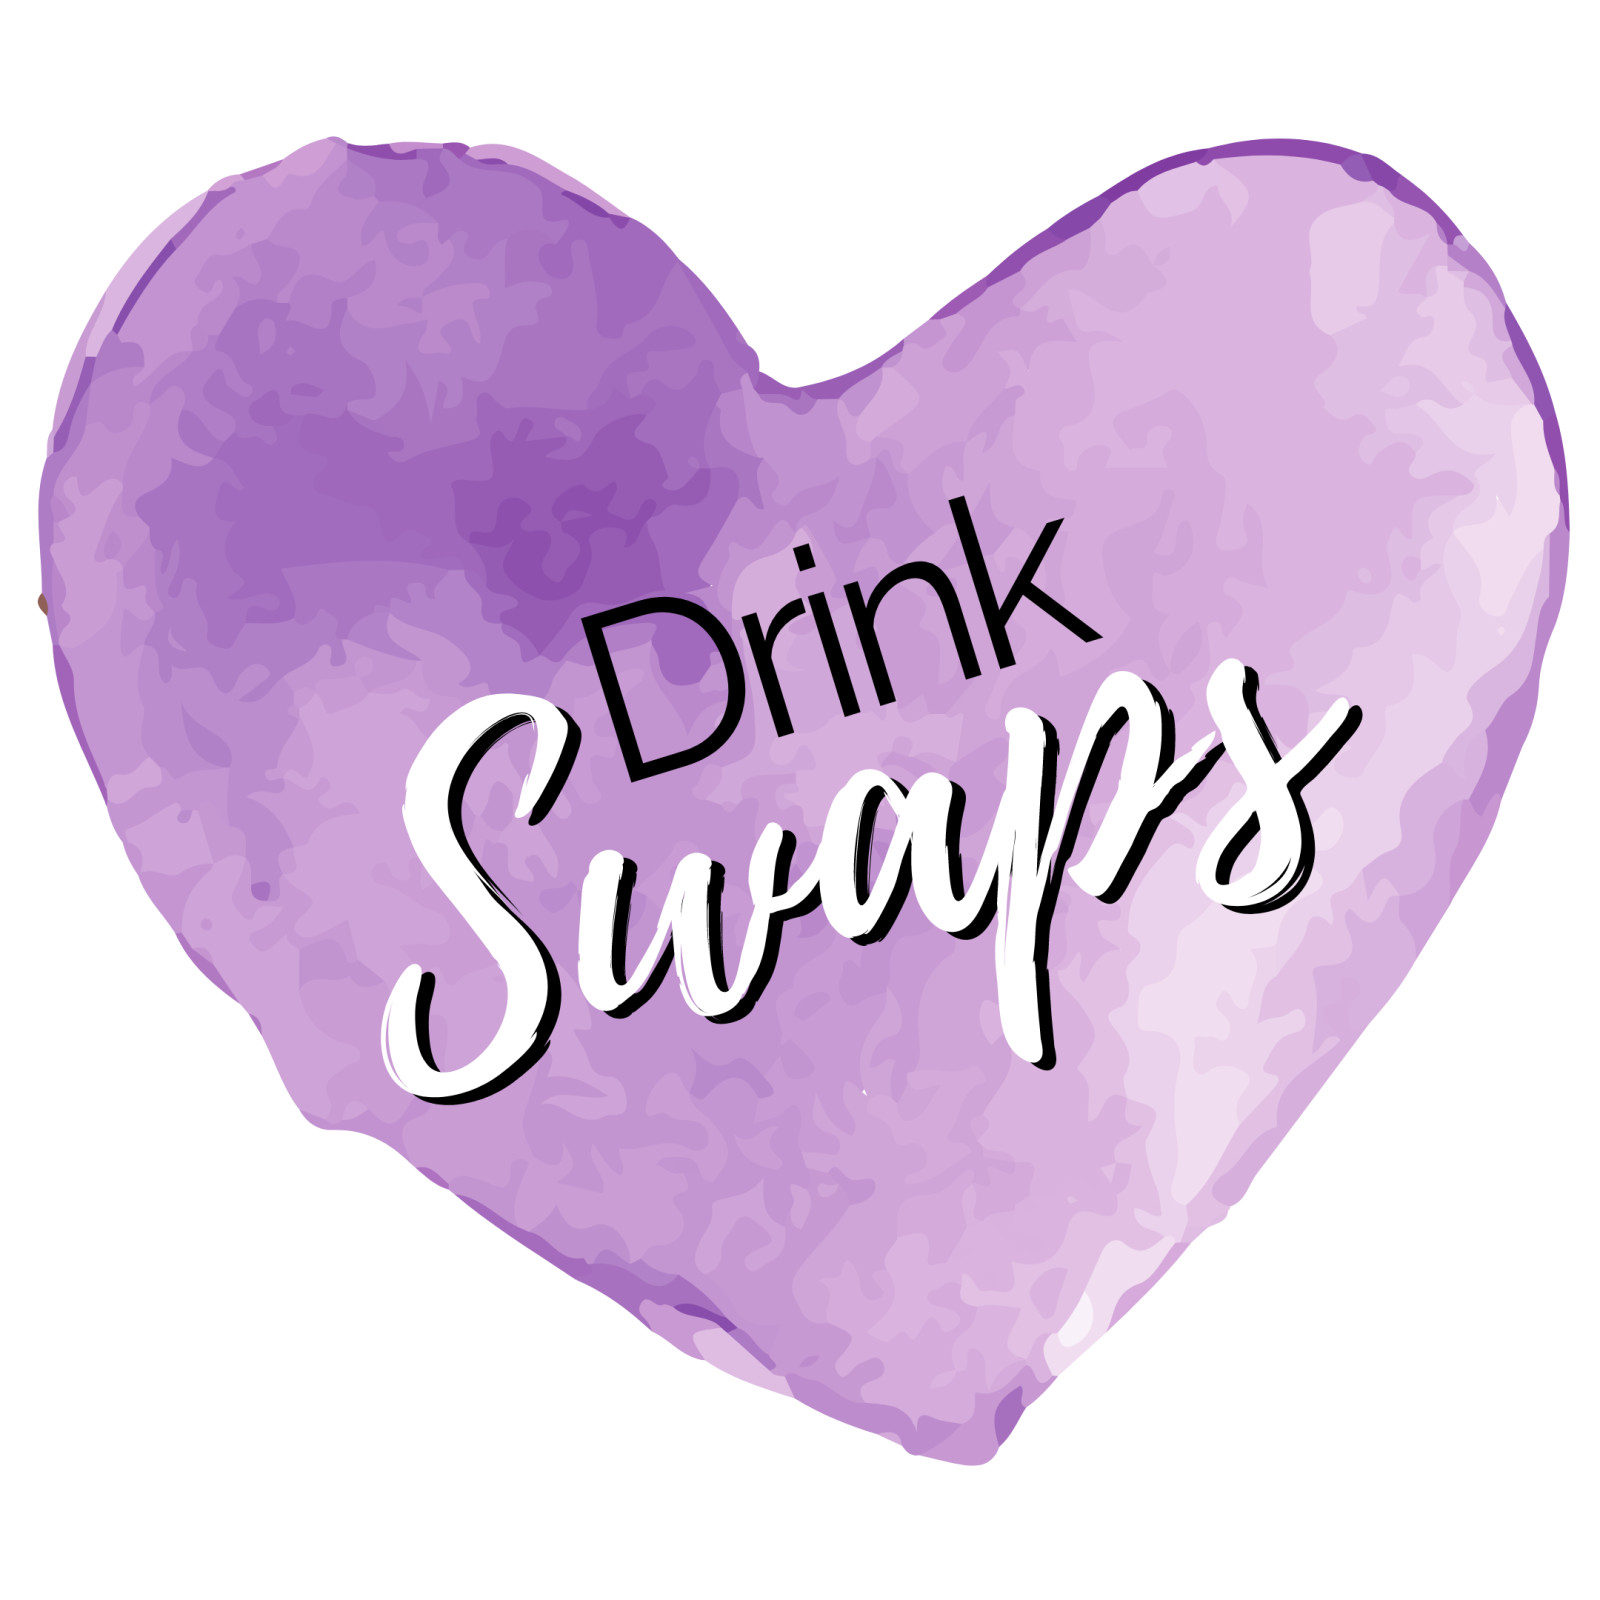 Drink Swaps